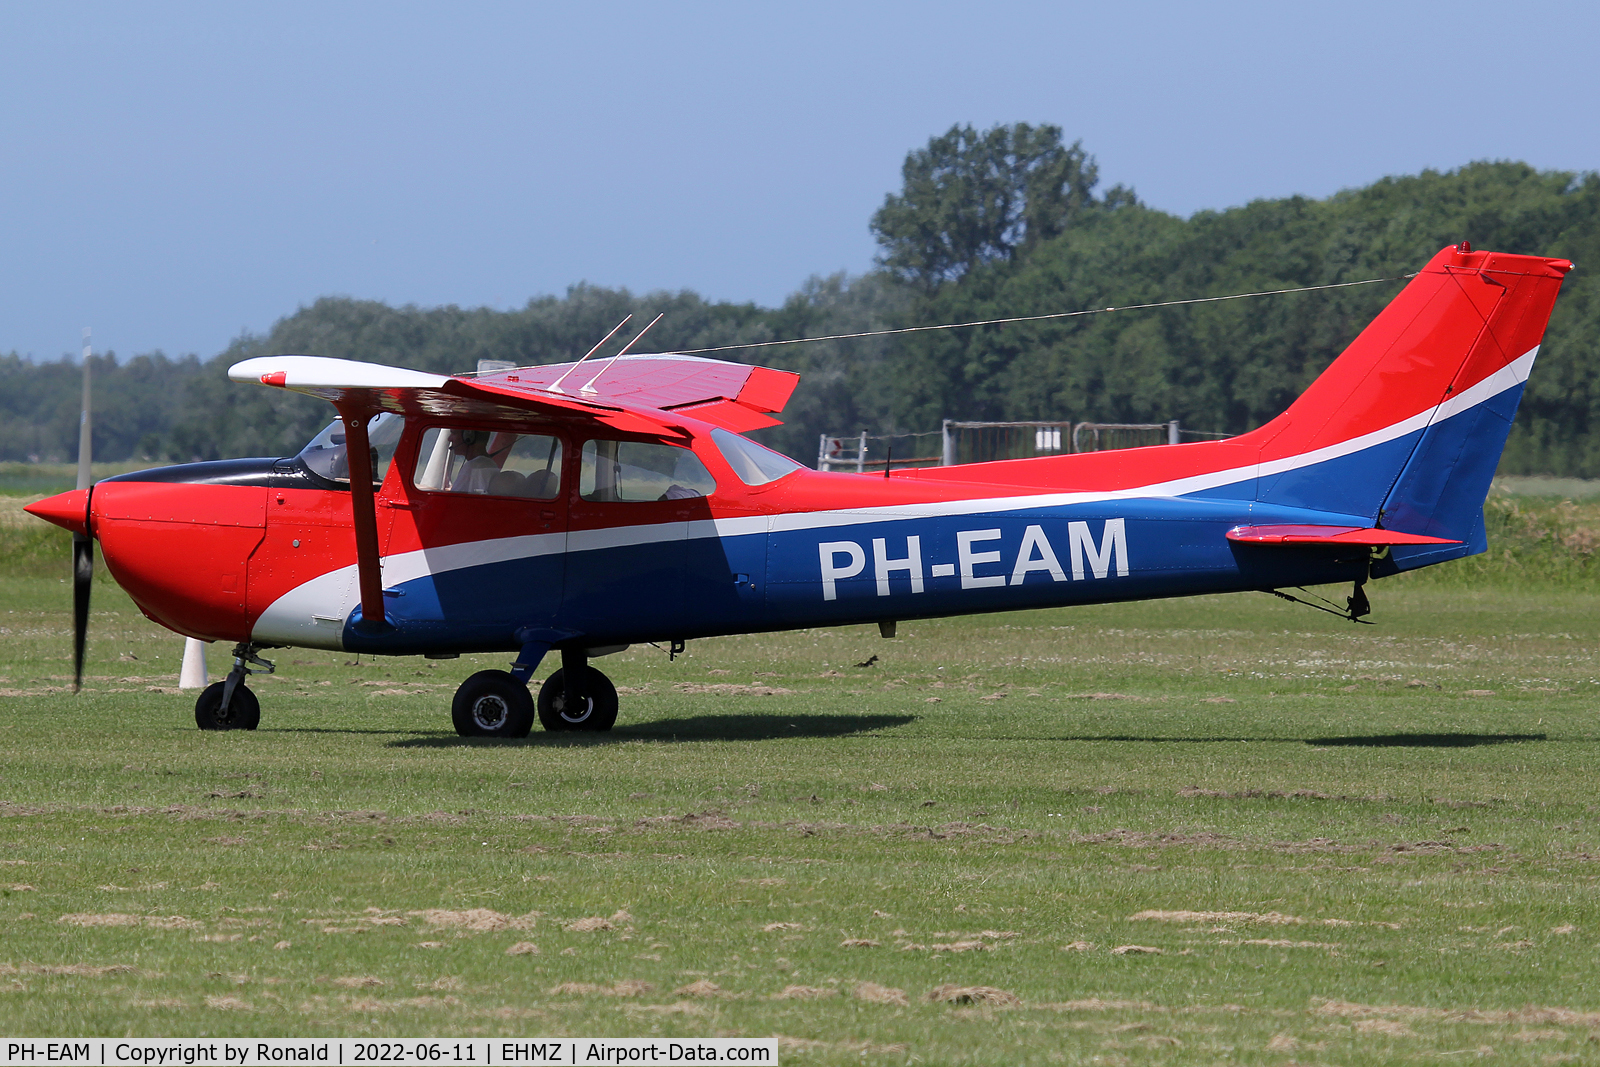 PH-EAM, 1977 Reims F172N Skyhawk C/N 1602, at ehmz